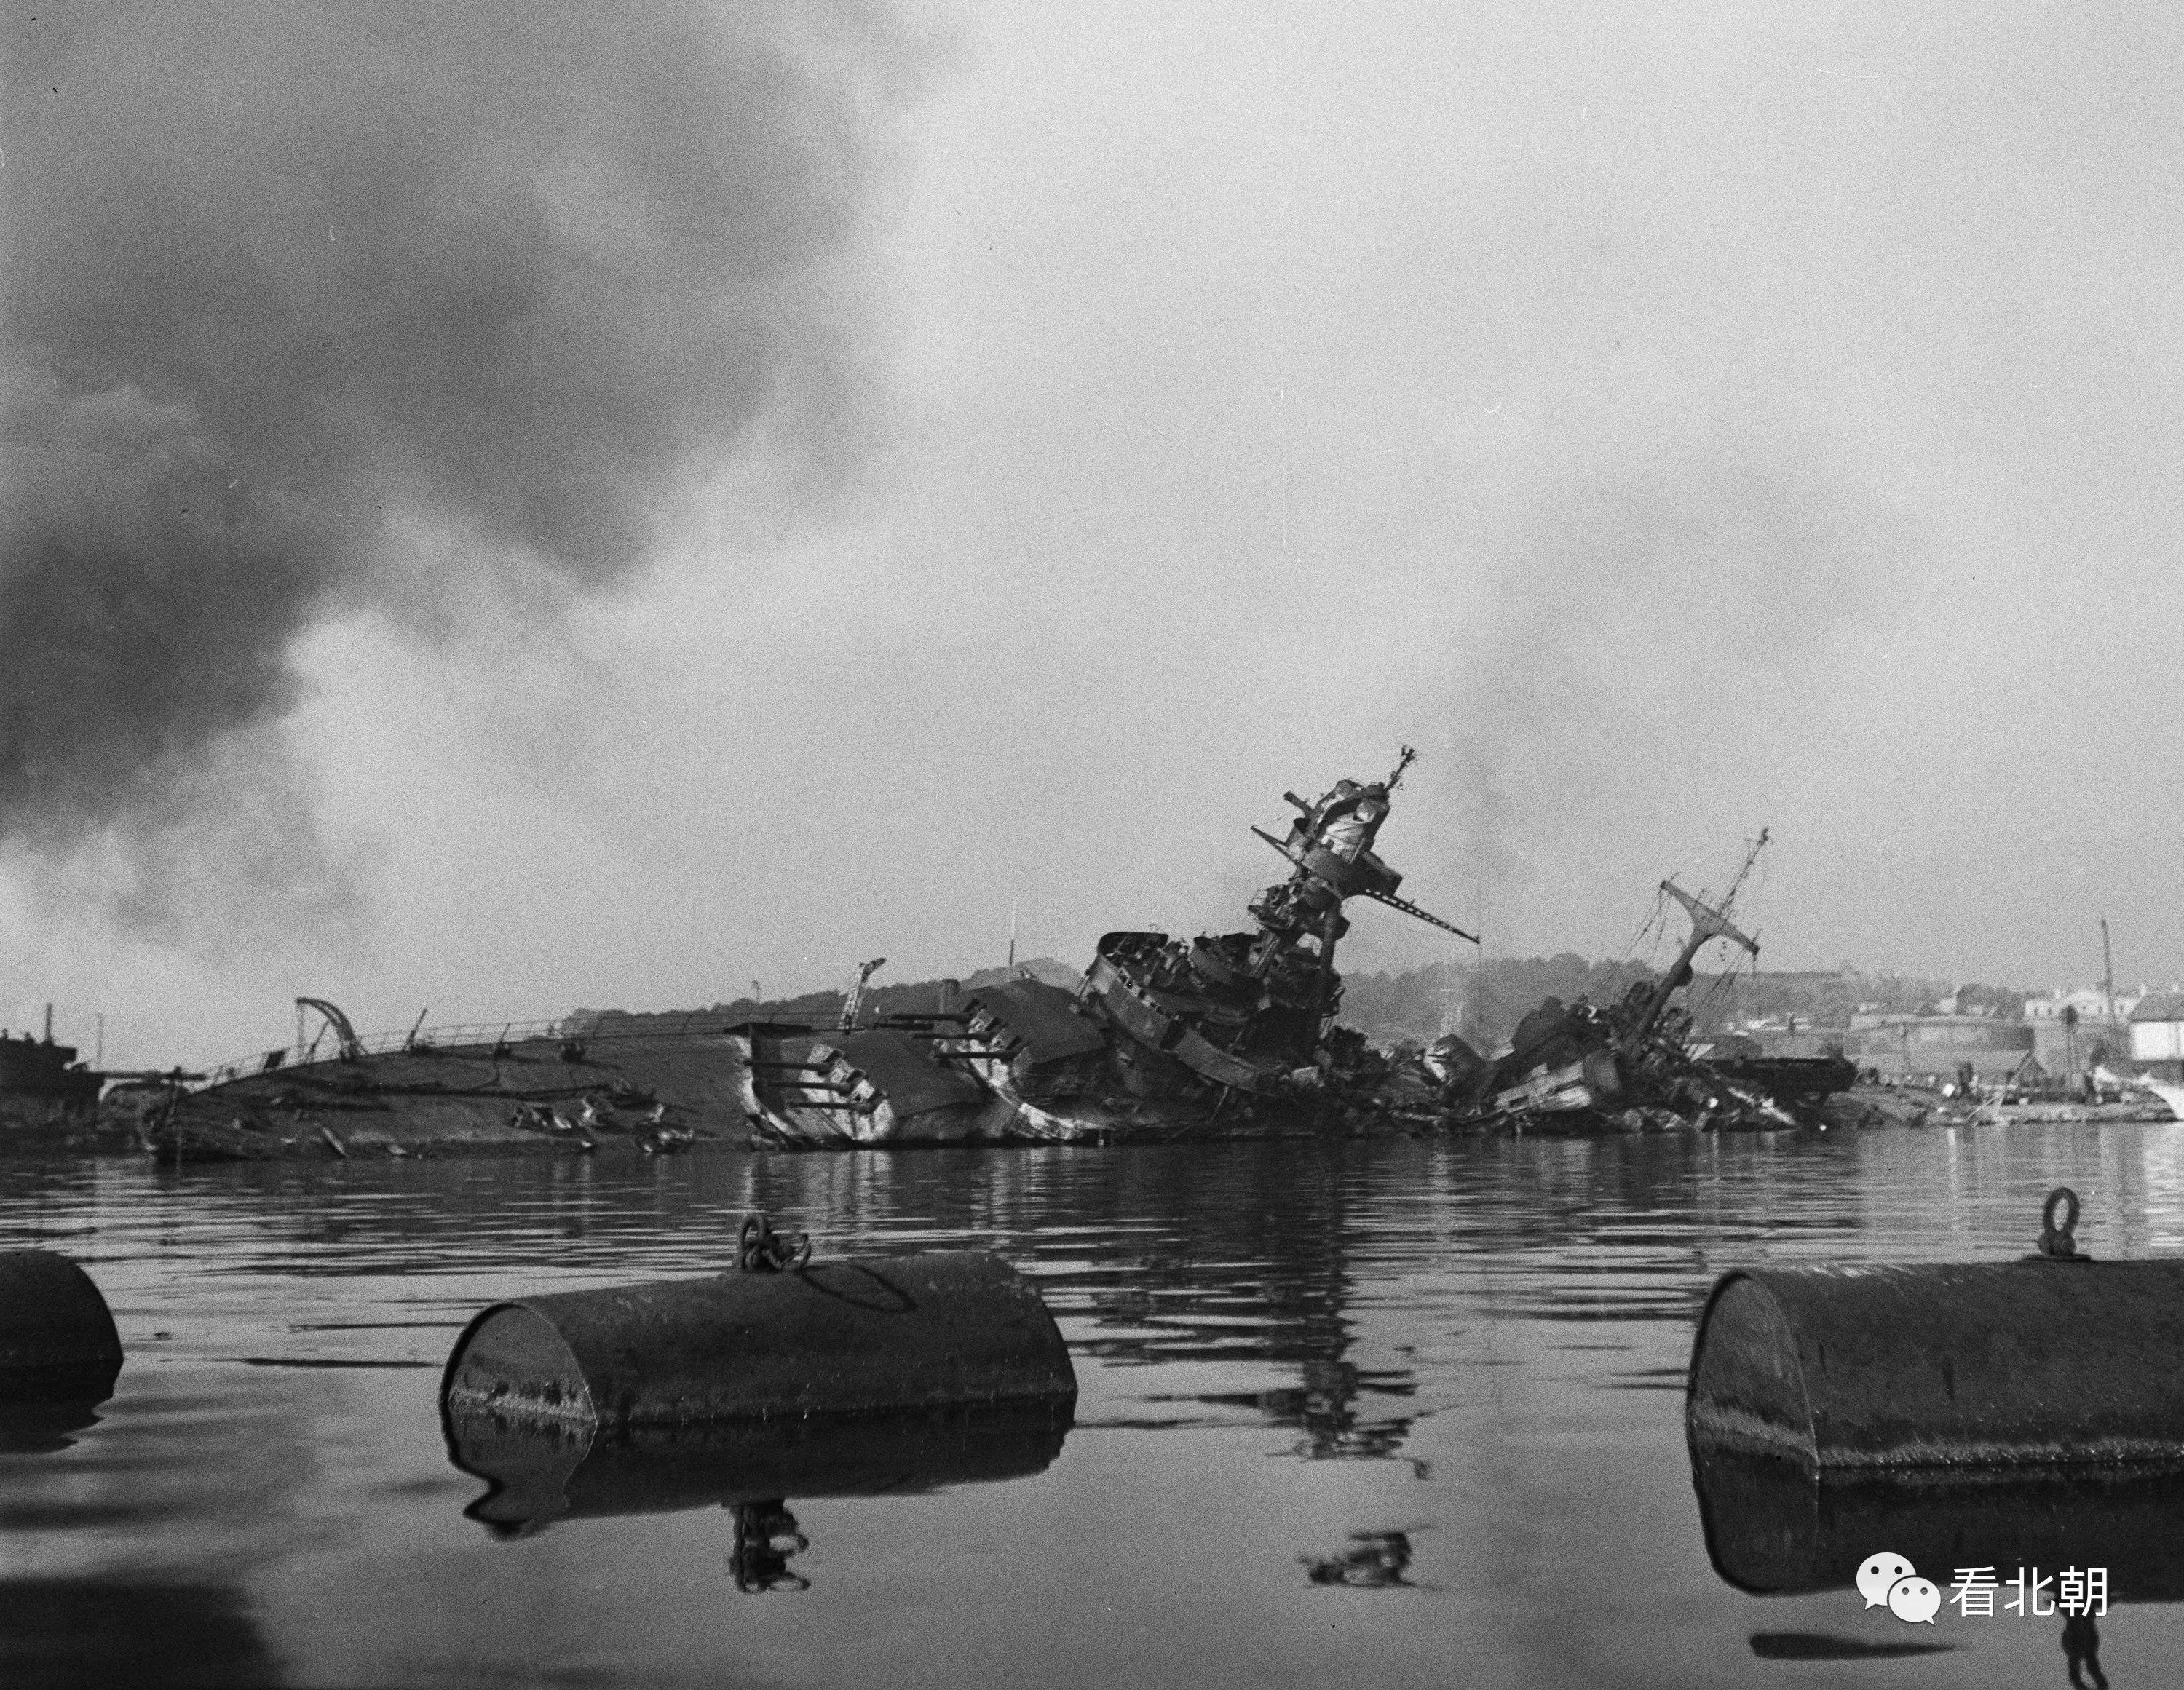 比陆军硬气得多!1942年11月27日土伦港自沉的法国舰队